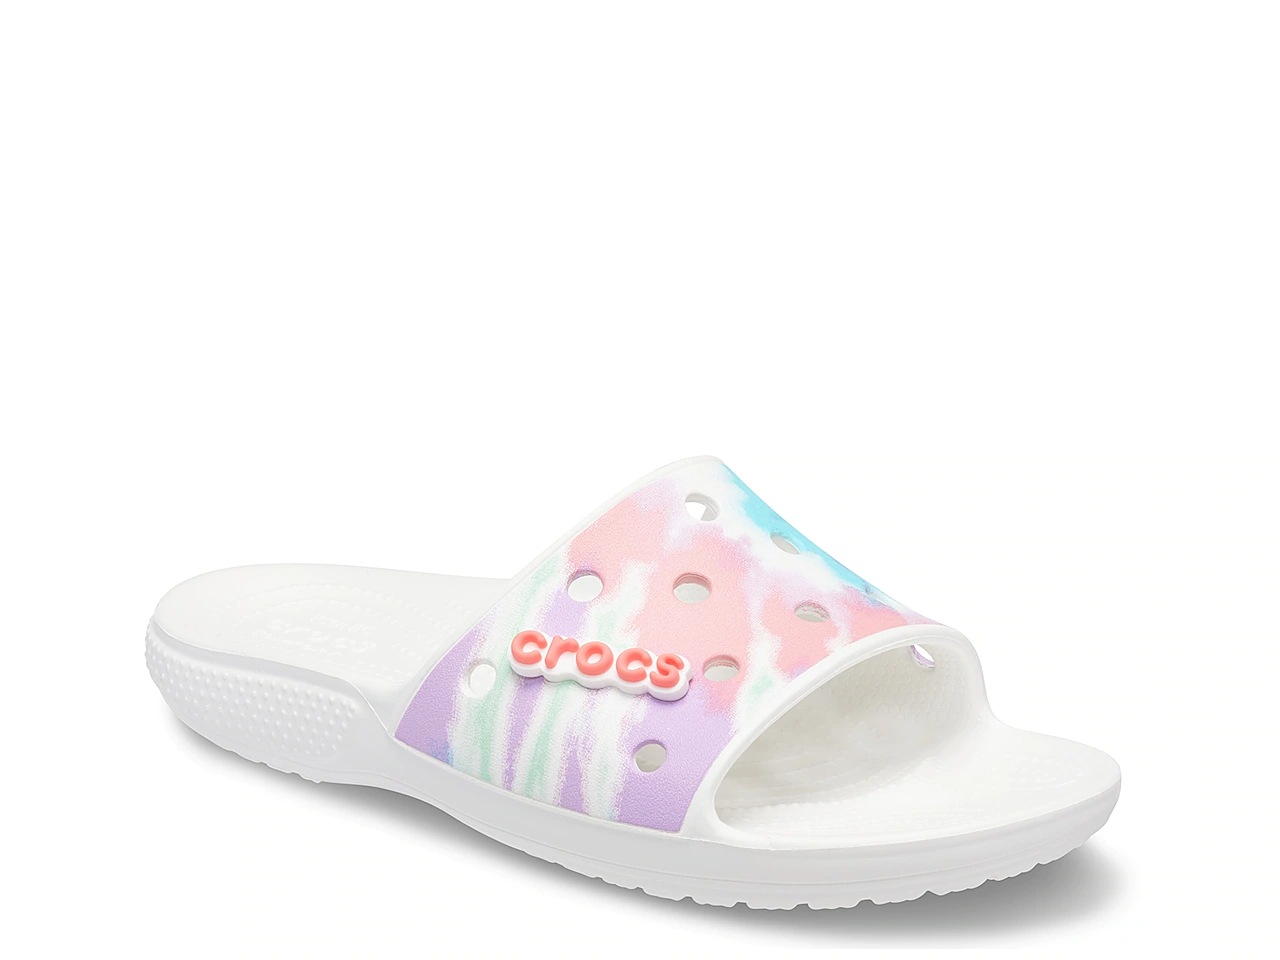 A white slipper by Crocs